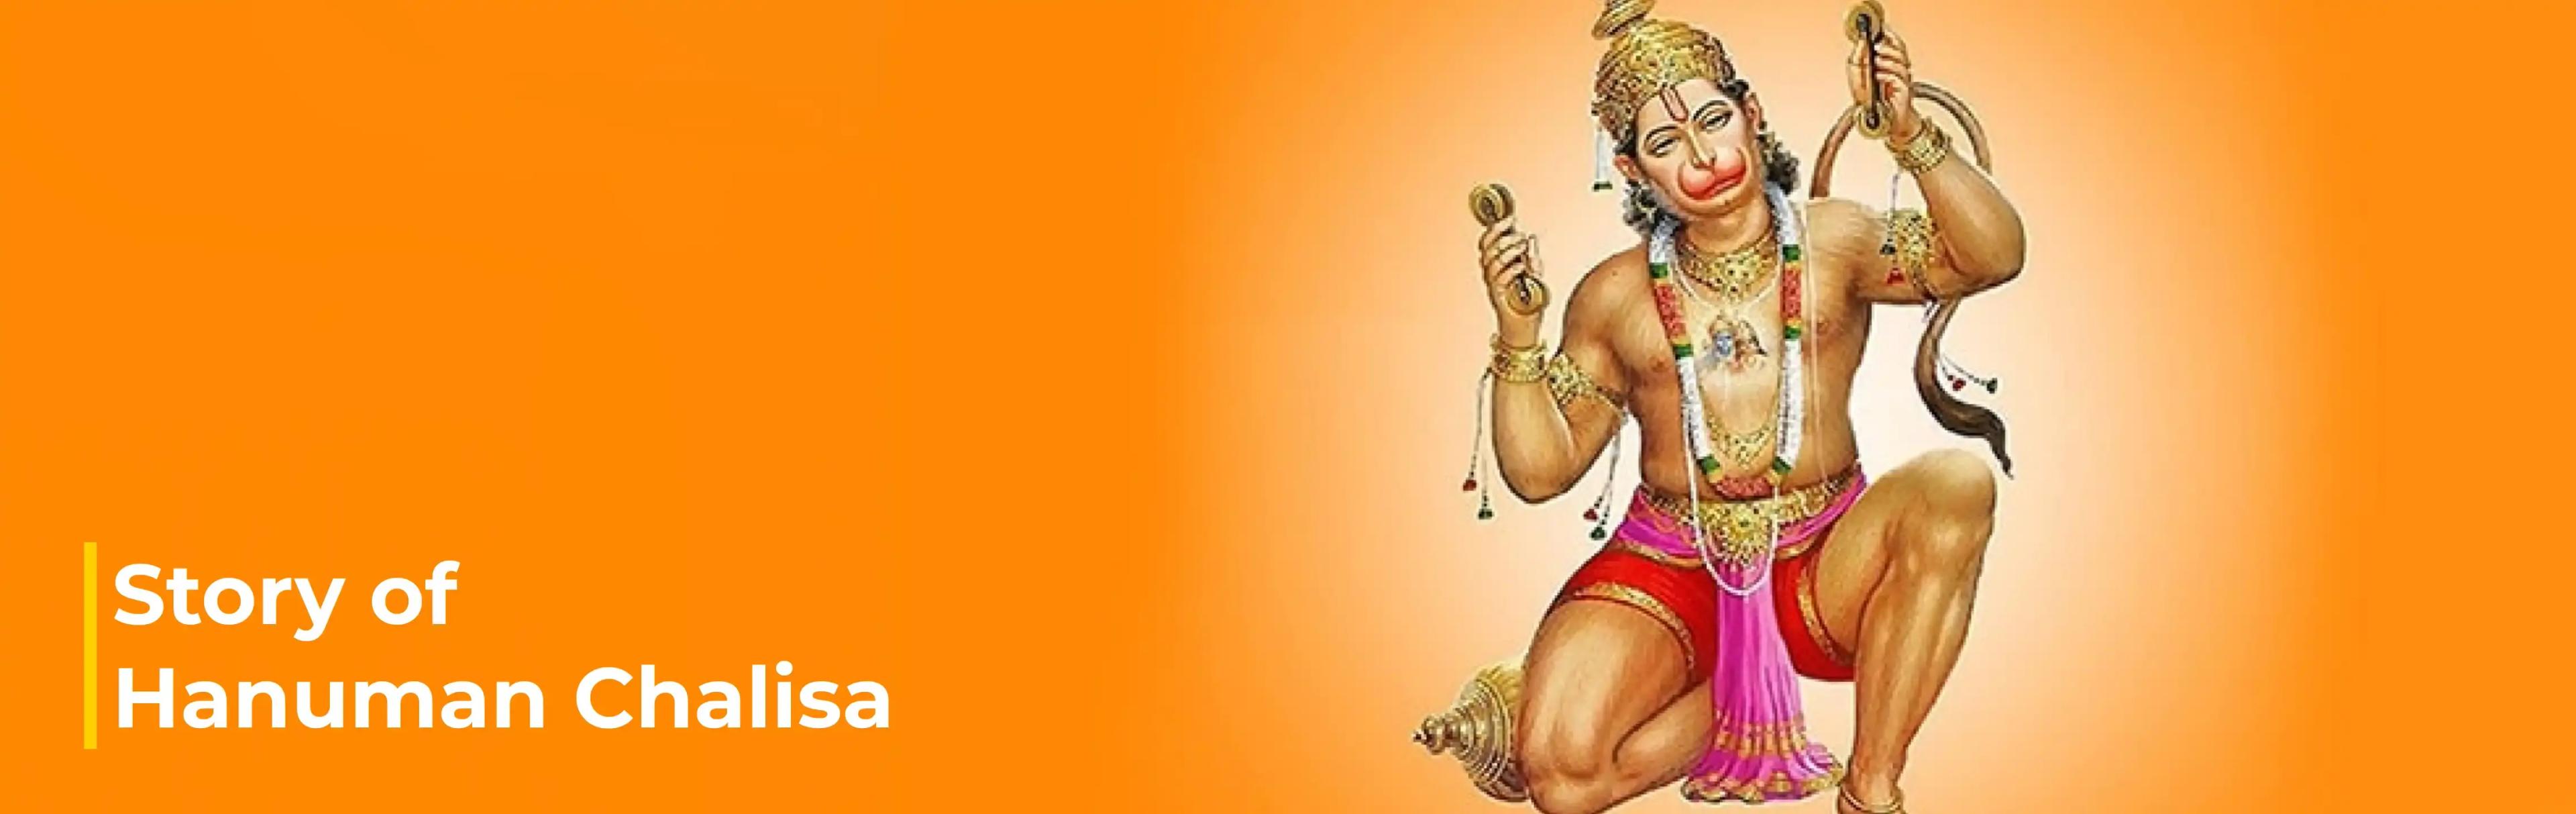 Hanuman Chalisa real story